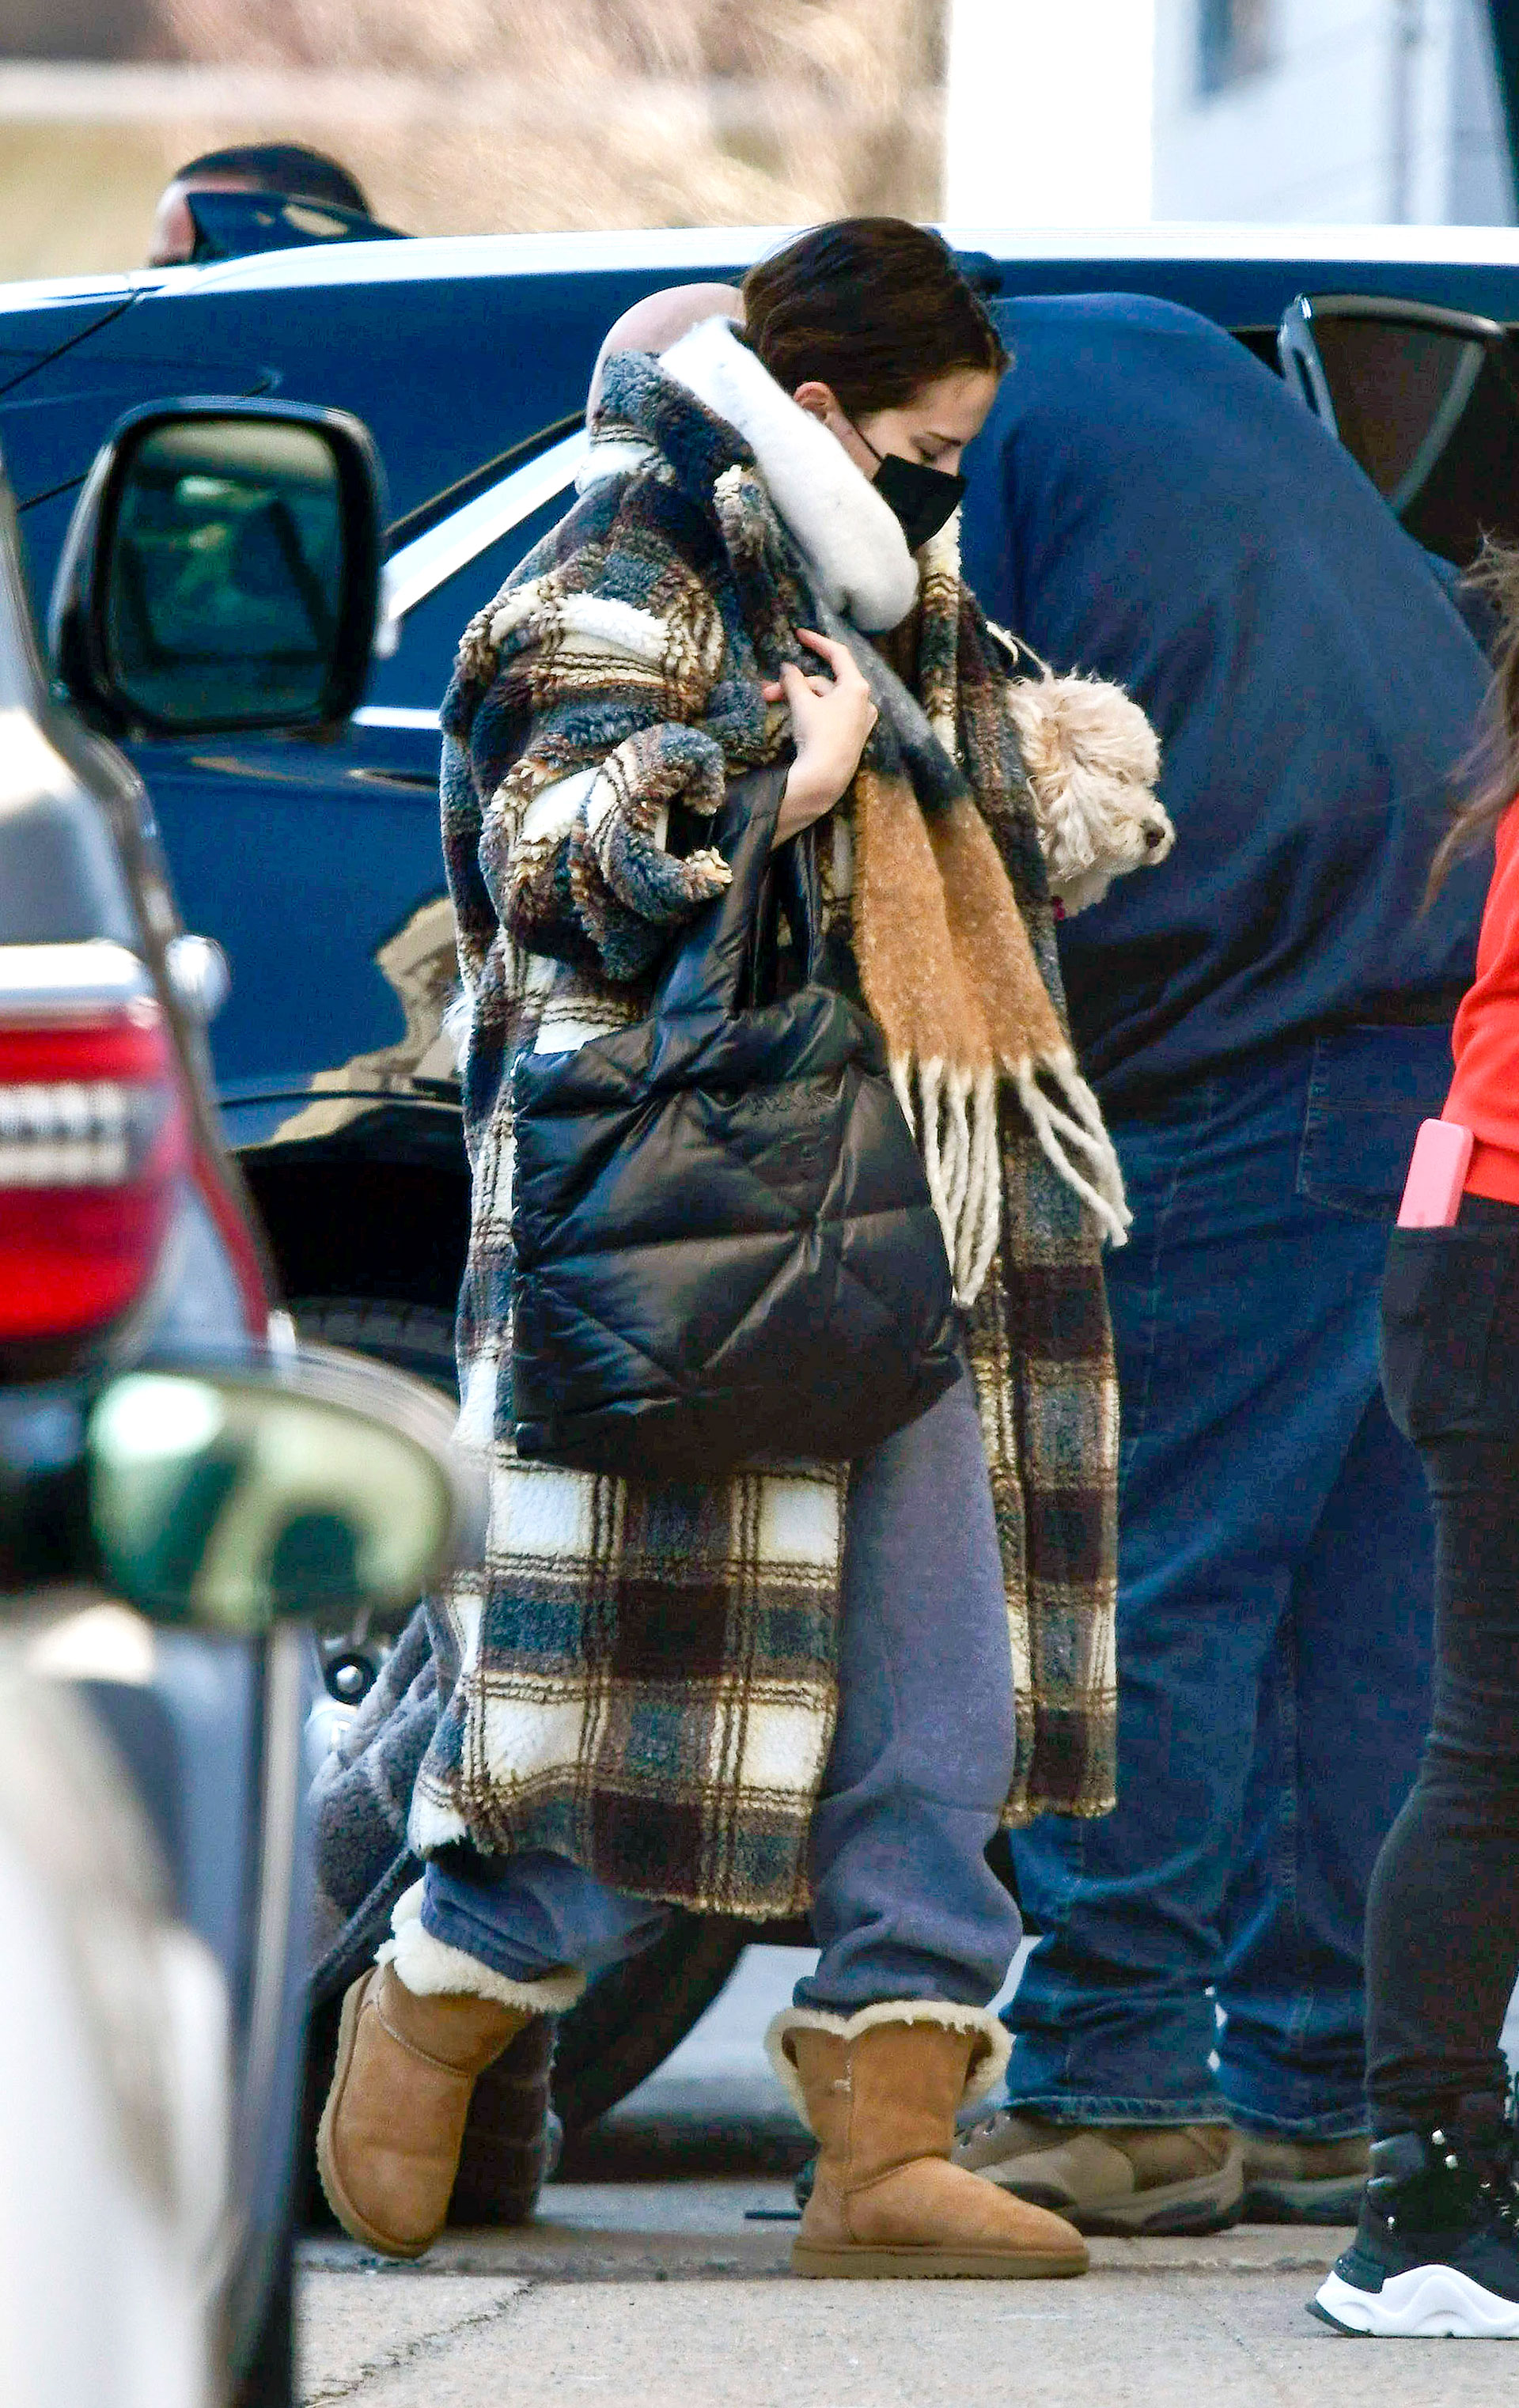 Buscó pasar desapercibida. Selena Gomez quiso evitar que la reconocieran durante un paseo por Nueva York. Lució un tapado a cuadros, una bufanda extra large y tapabocas